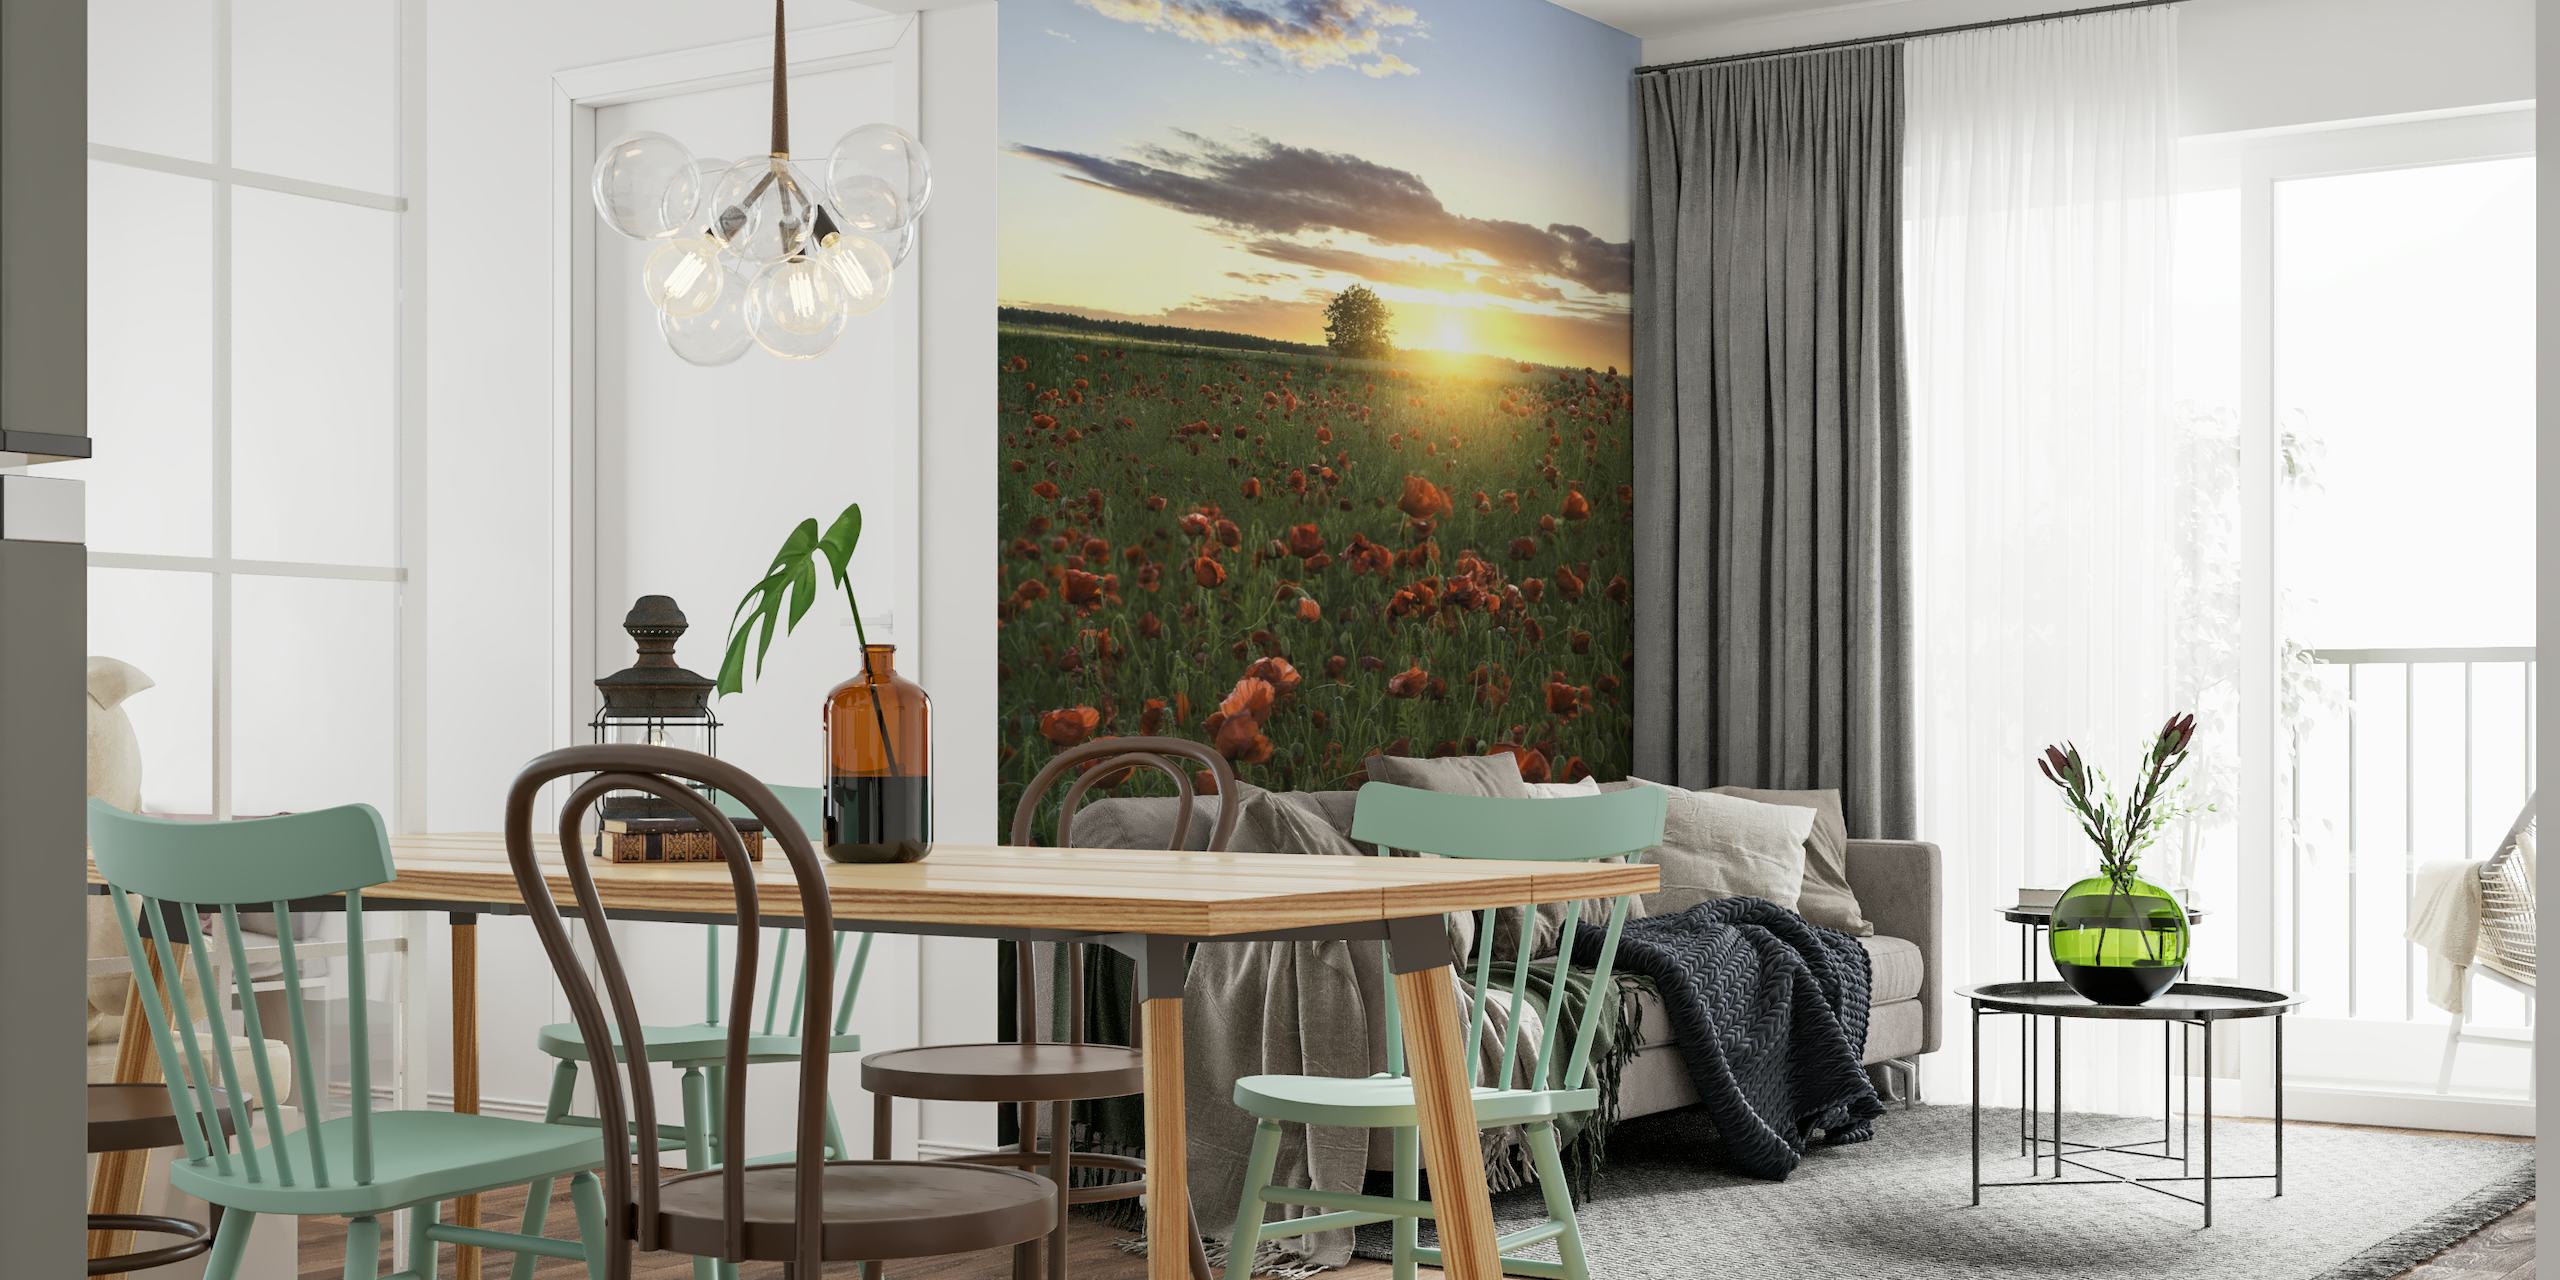 Poppy fields of Sweden wallpaper